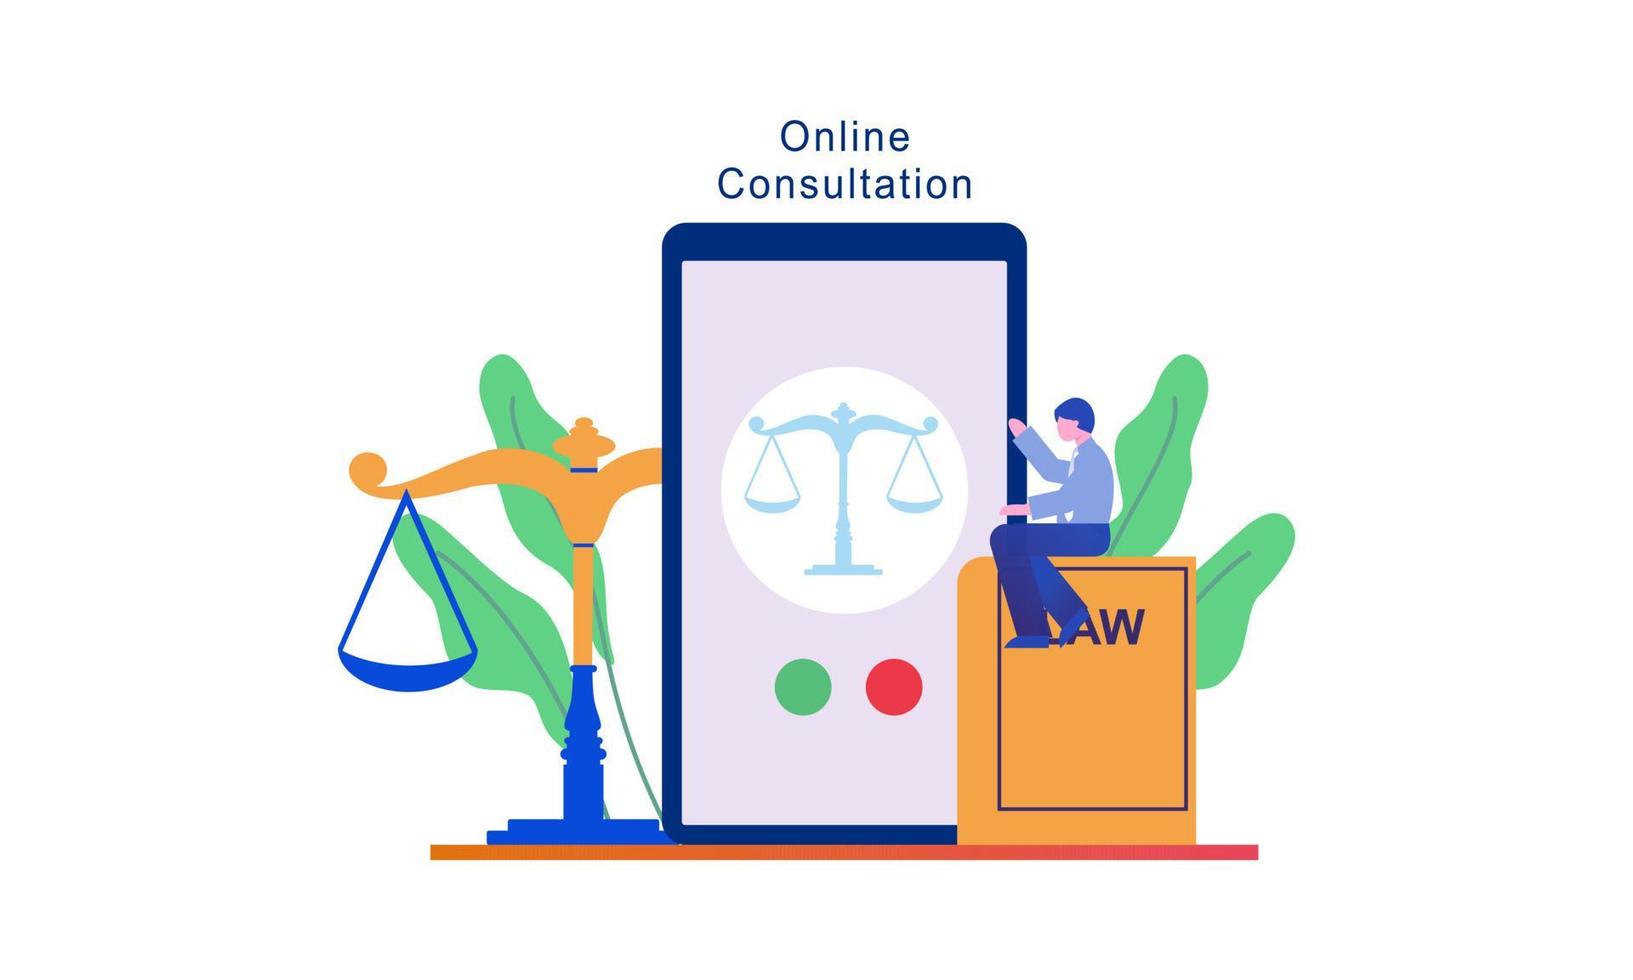 juridisk rådgivning onlinetjänst, advokatwebbplats vektorillustration vektor